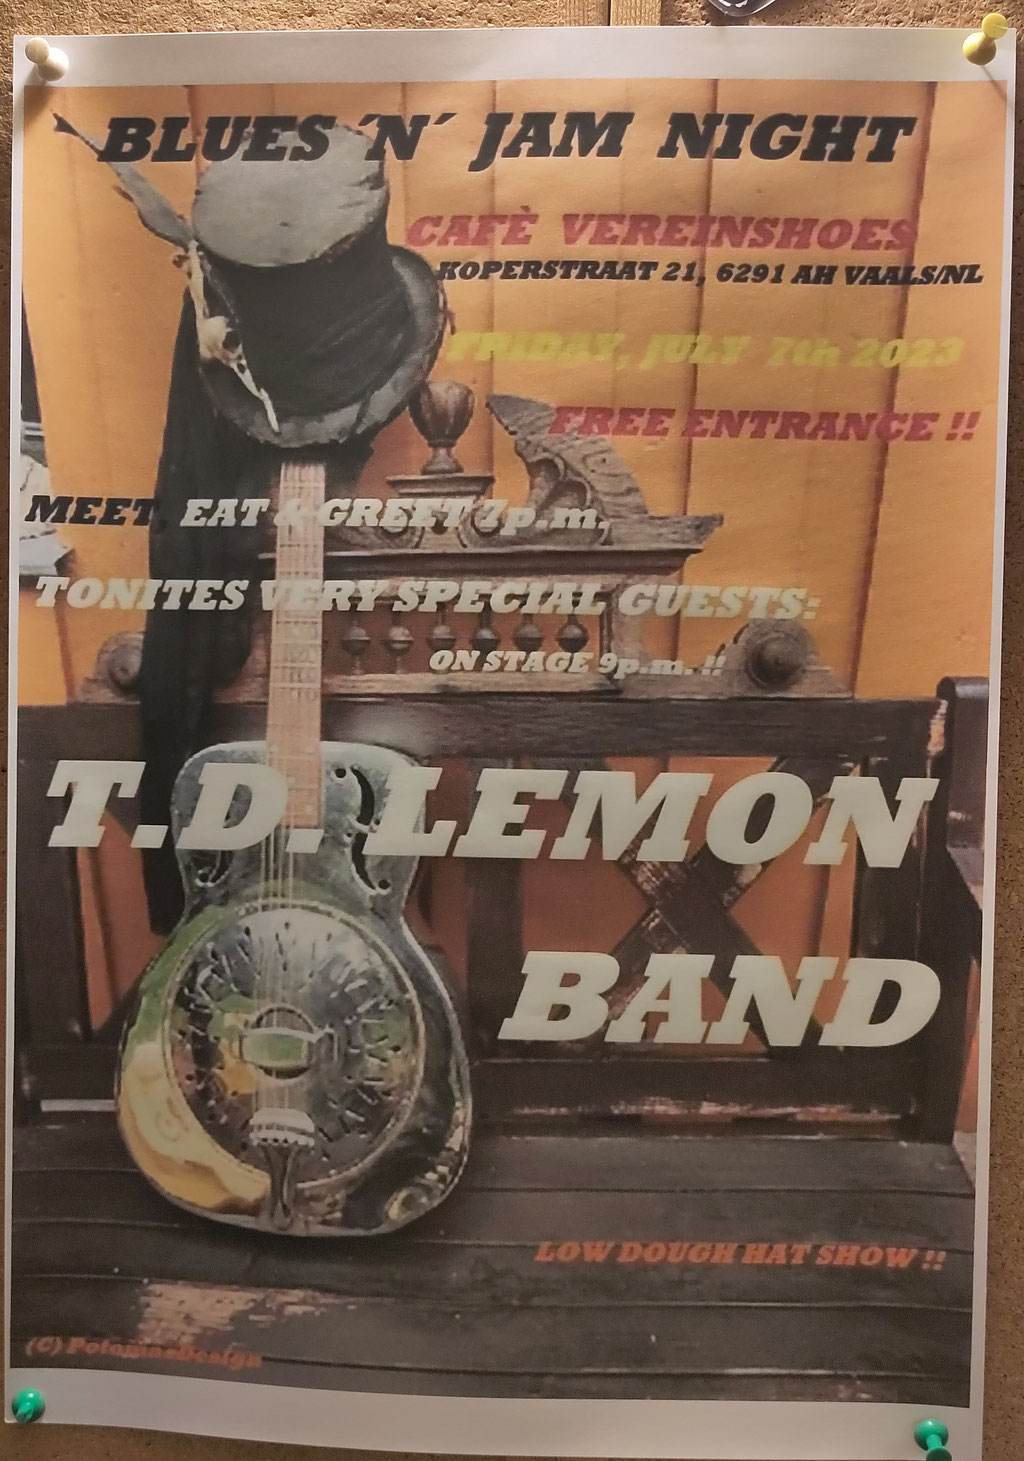 T.D. Lemon Band, Aachen - Plakat Vereinshoes